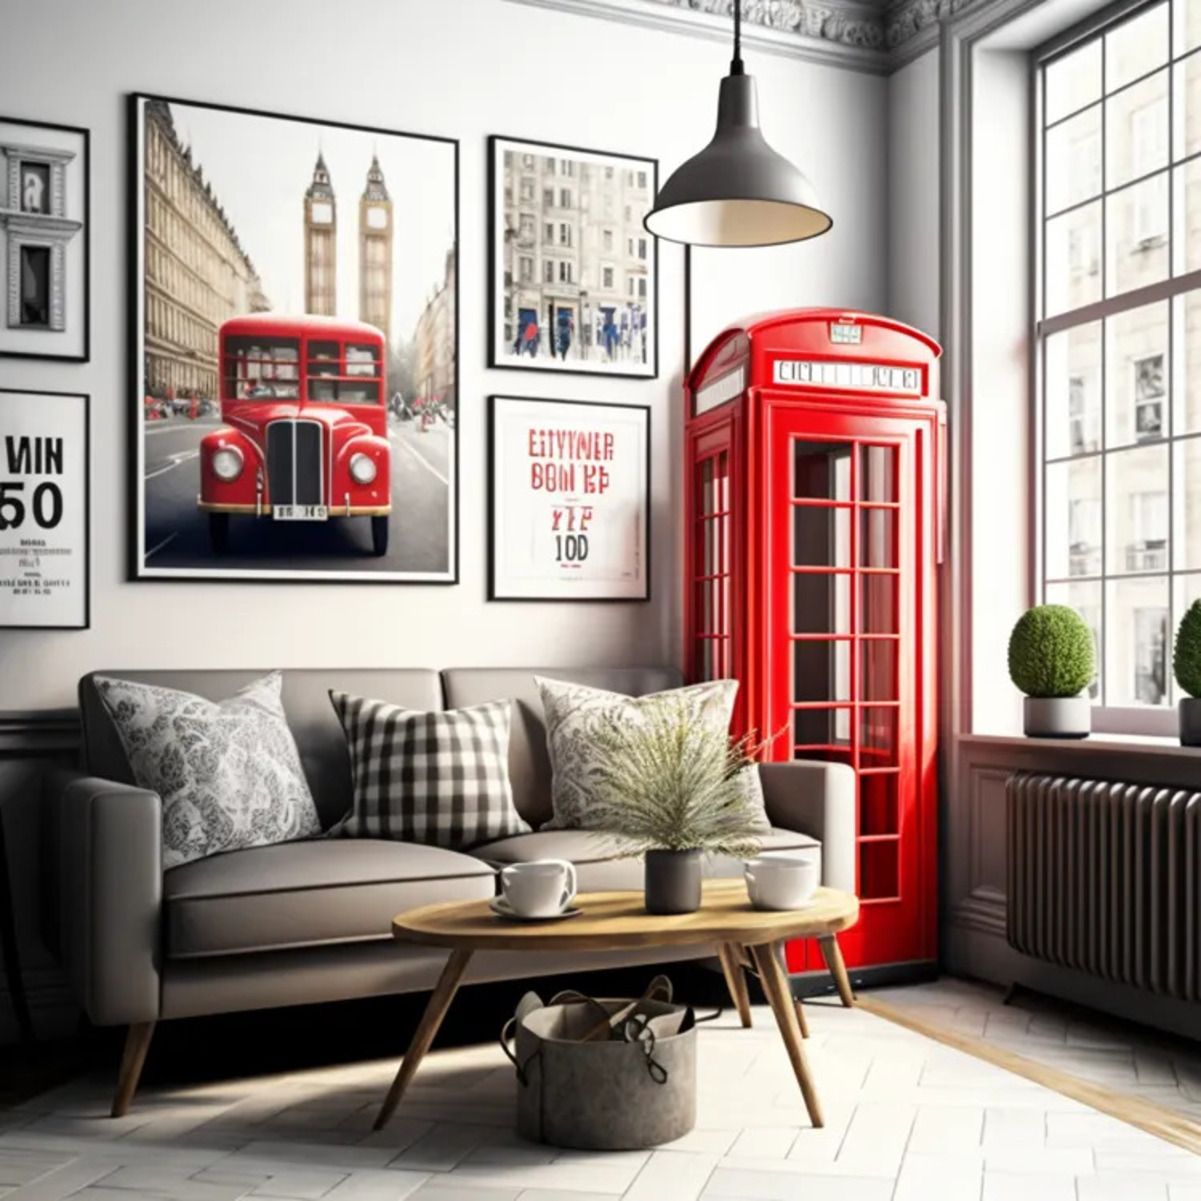 Лондонский стиль в интерьере - как обустроить комнату в атмосфере города - Недвижимость